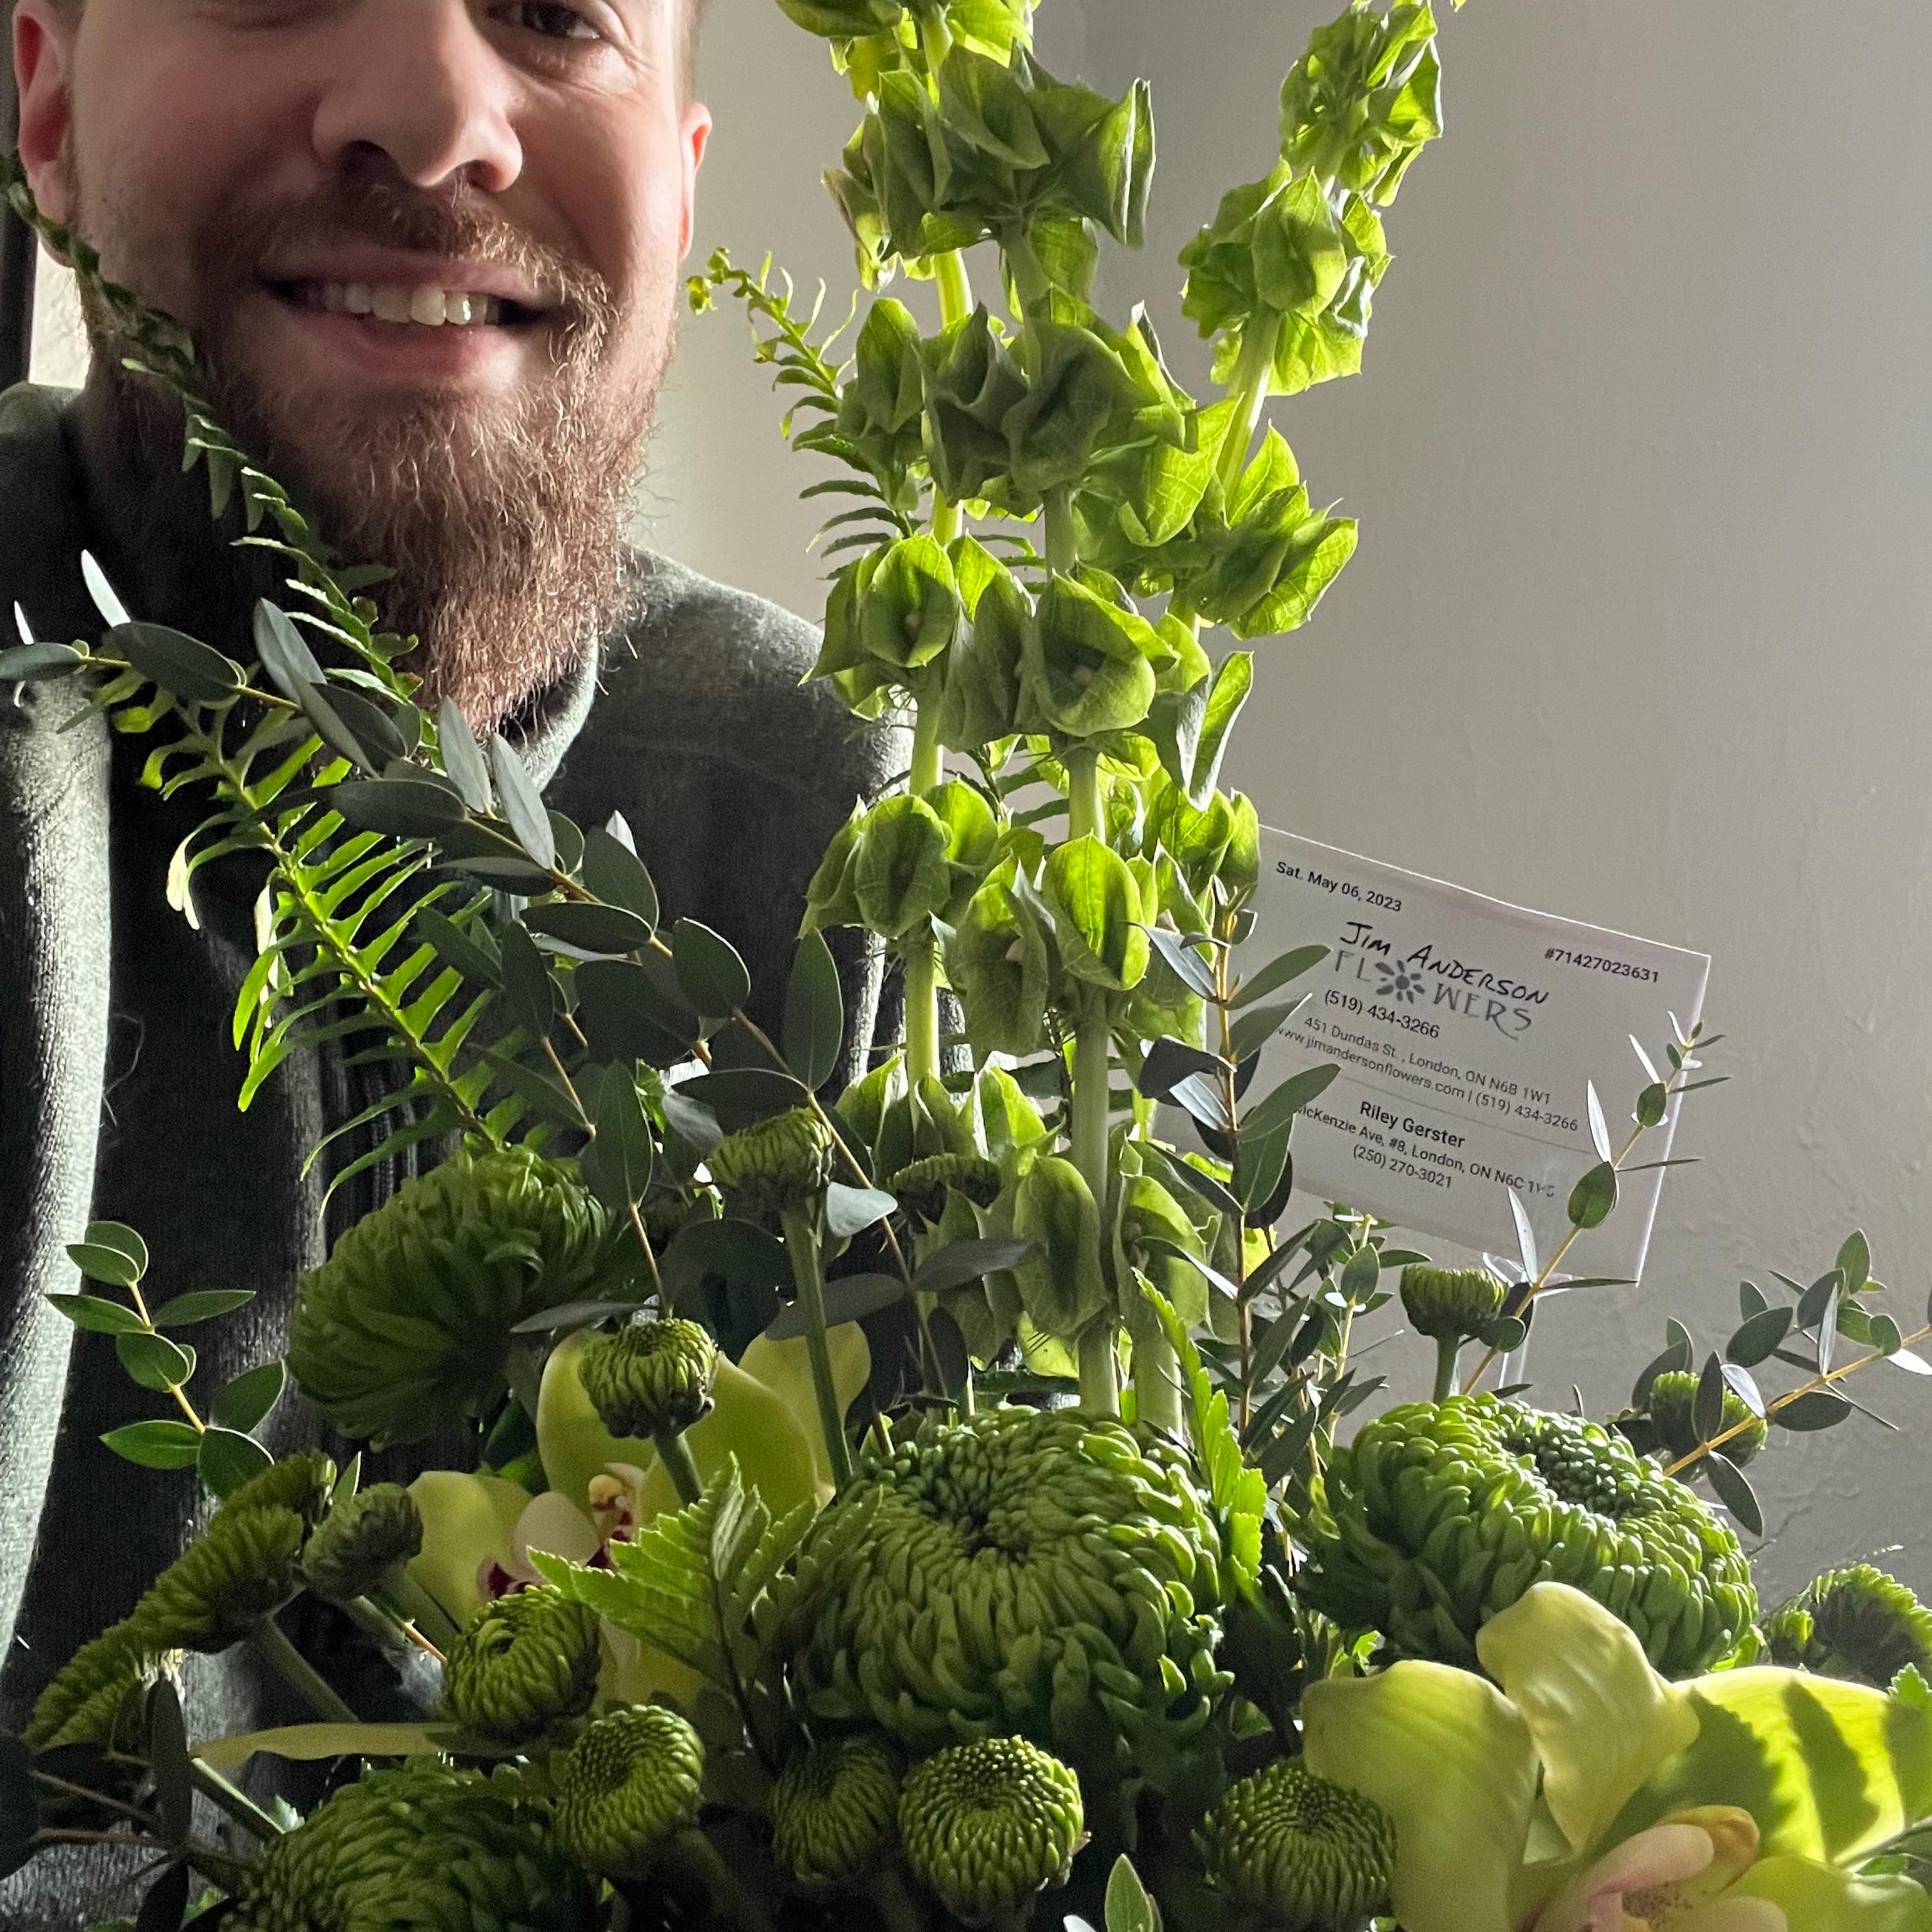 Man with beard holding a bright green arrangement